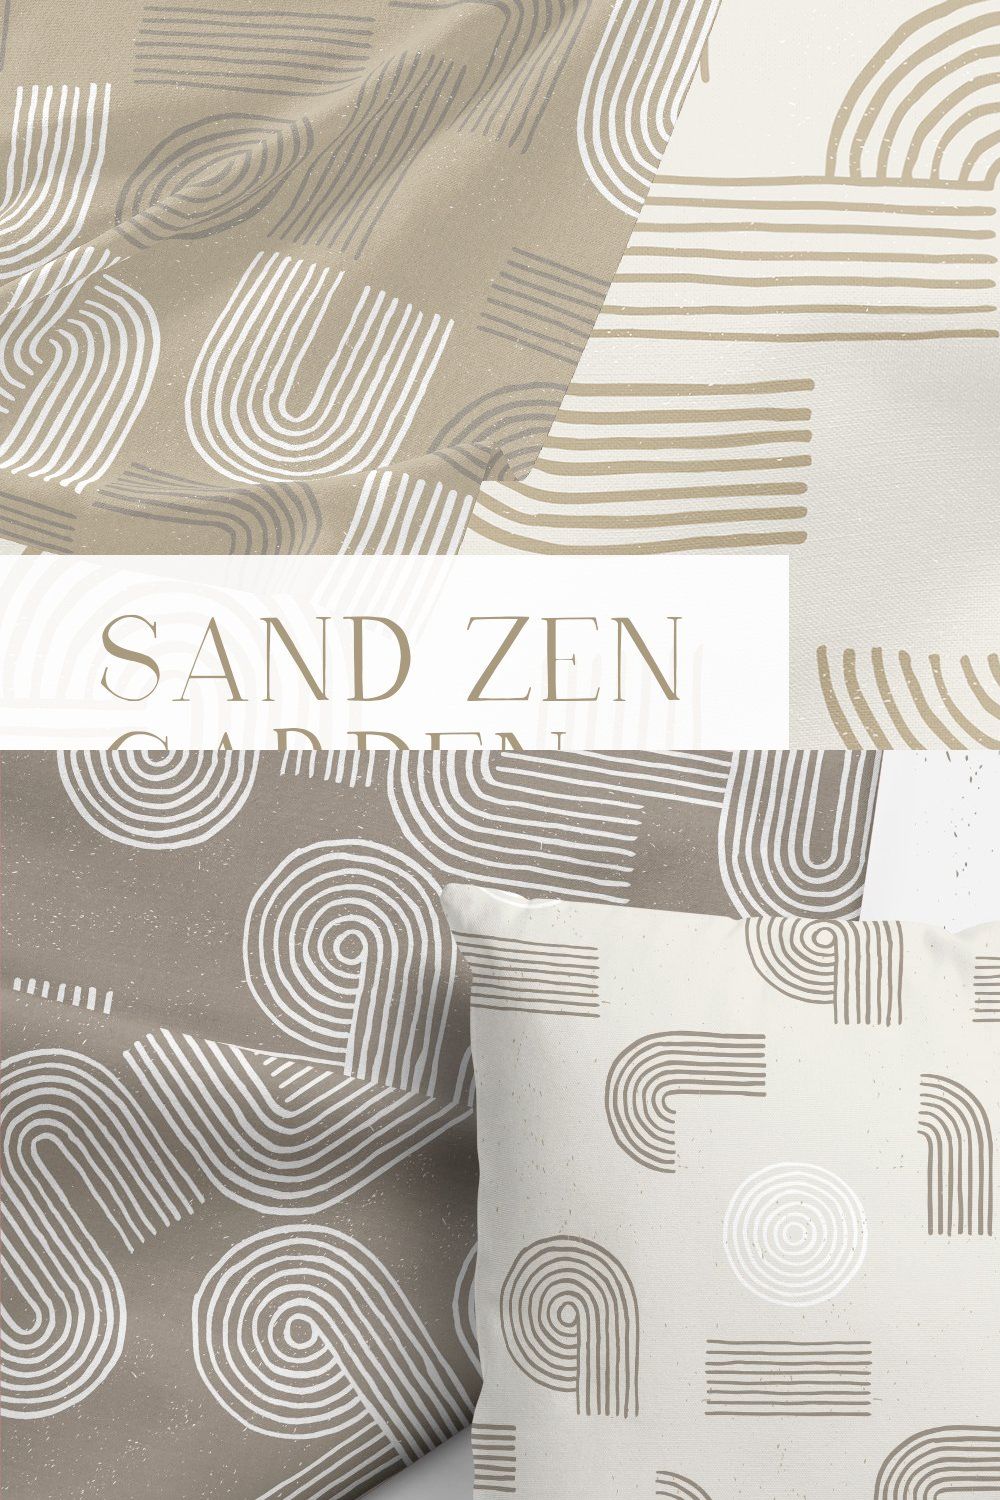 Sand Zen Garden - Seamless Patterns pinterest preview image.